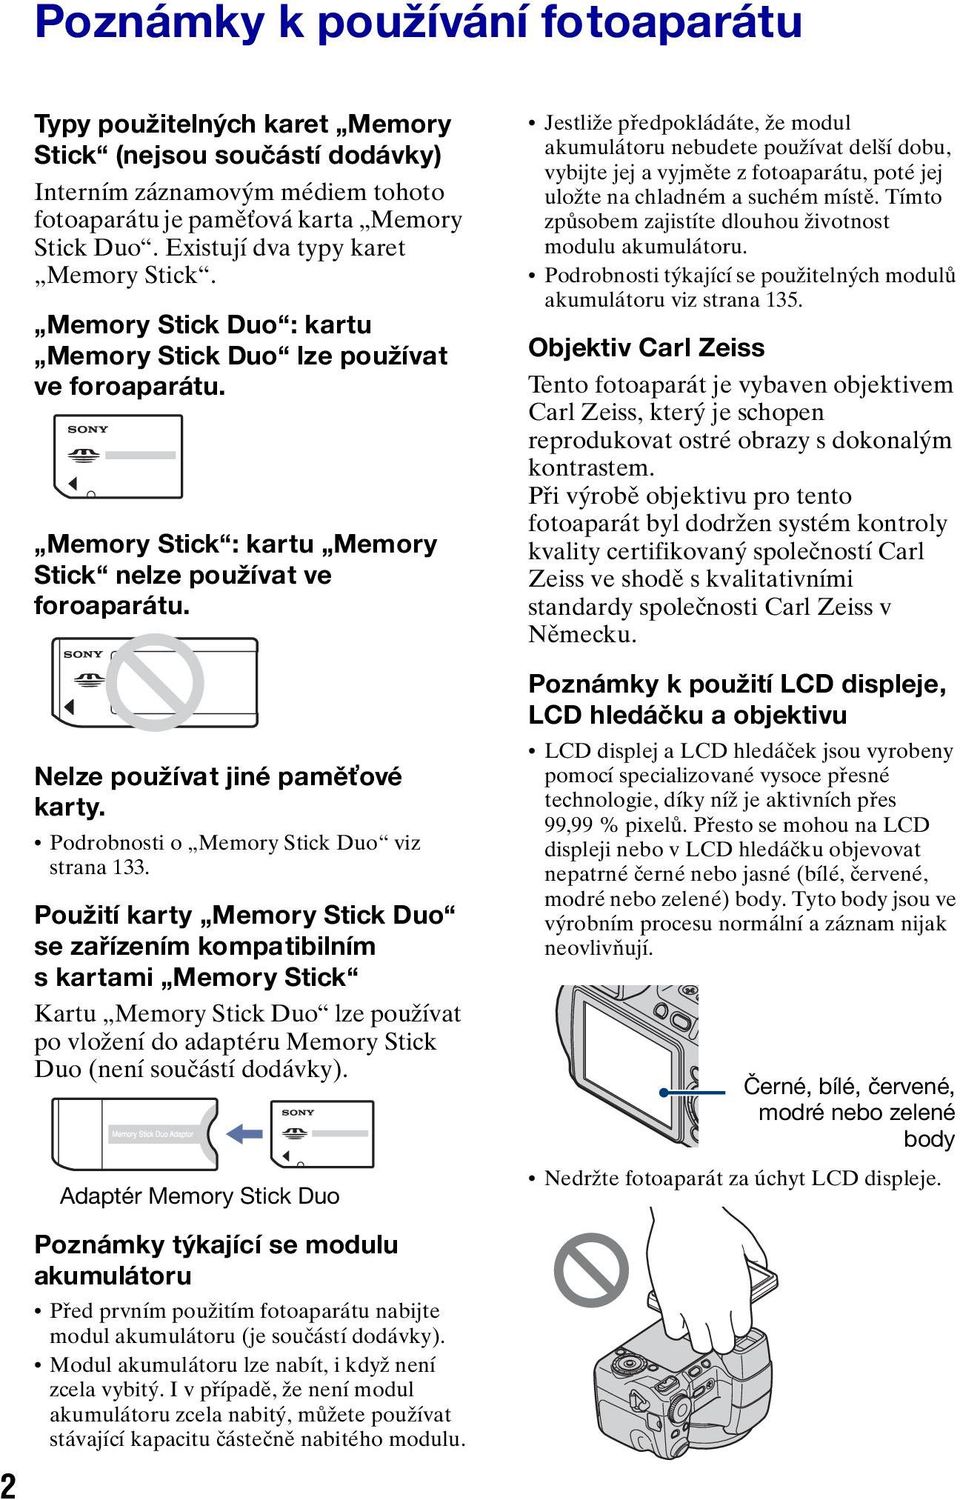 Nelze používat jiné paměťové karty. Podrobnosti o Memory Stick Duo viz strana 133.